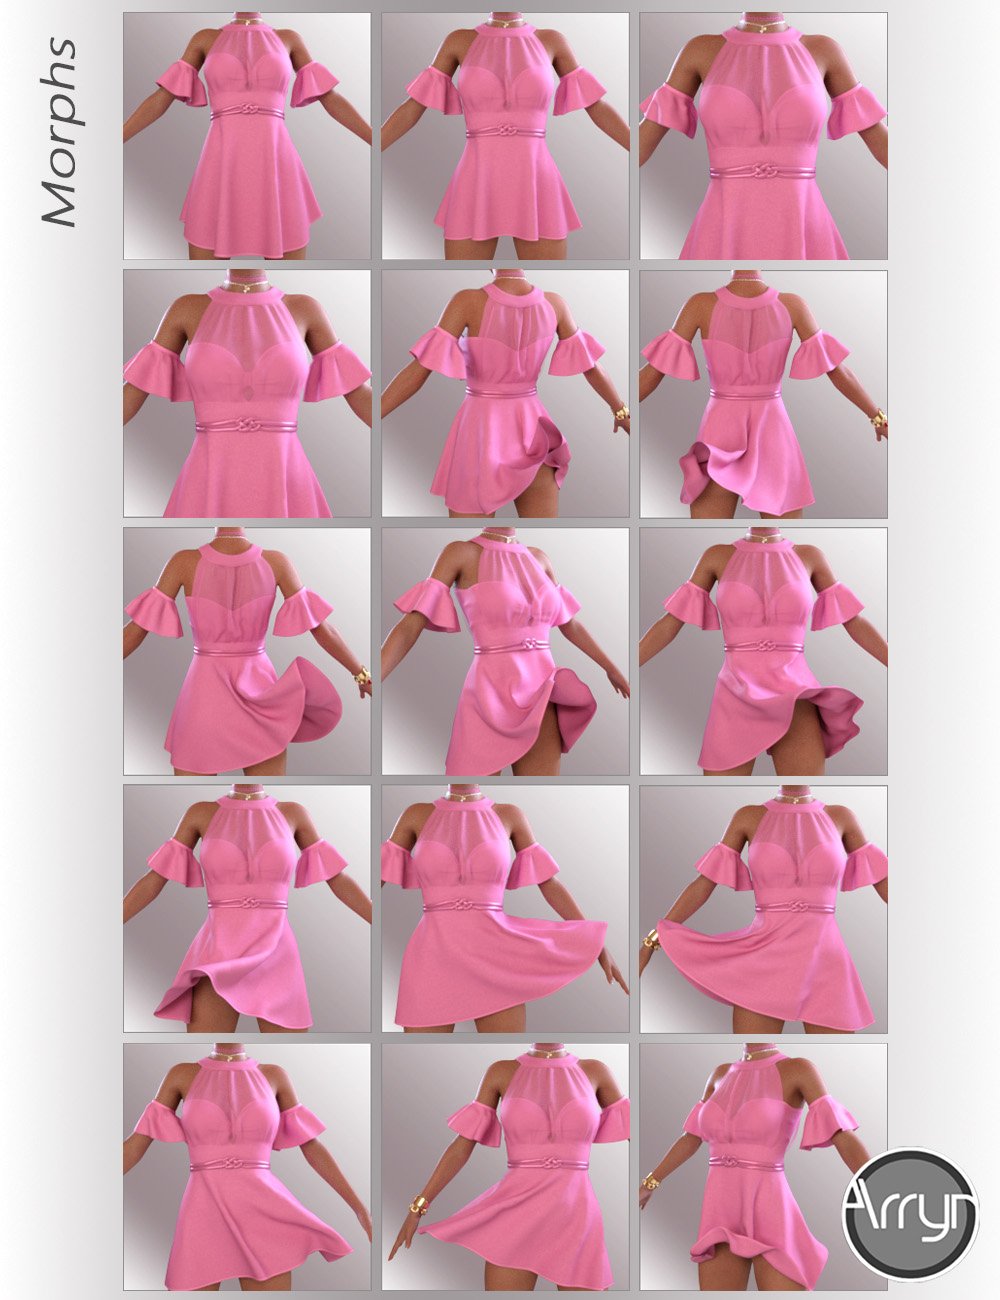 dForce Leyla Outfit for Genesis 8 Females by: OnnelArryn, 3D Models by Daz 3D